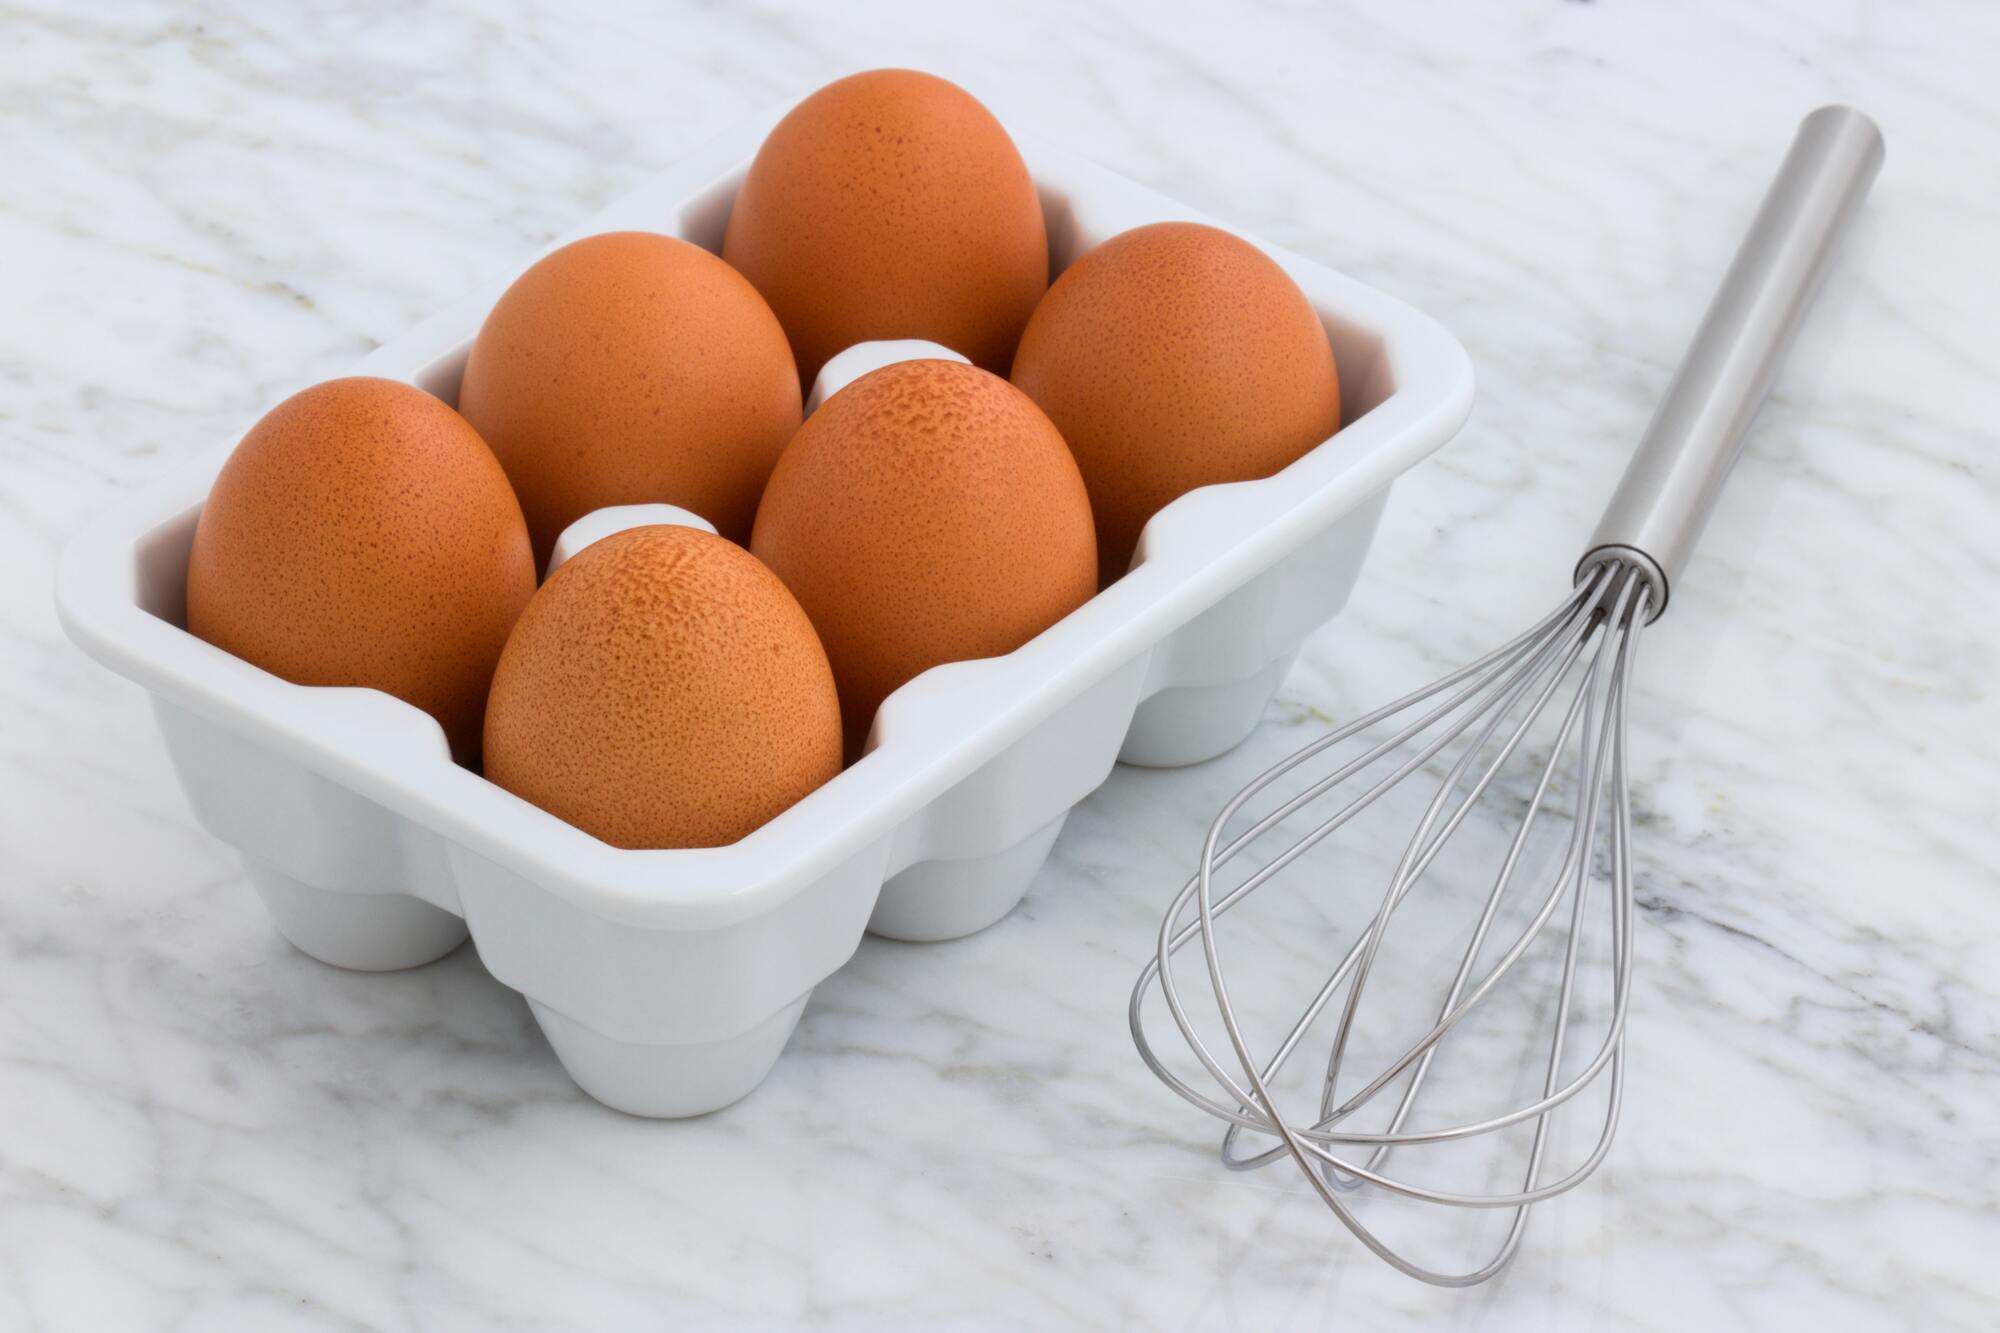 Homemade eggs